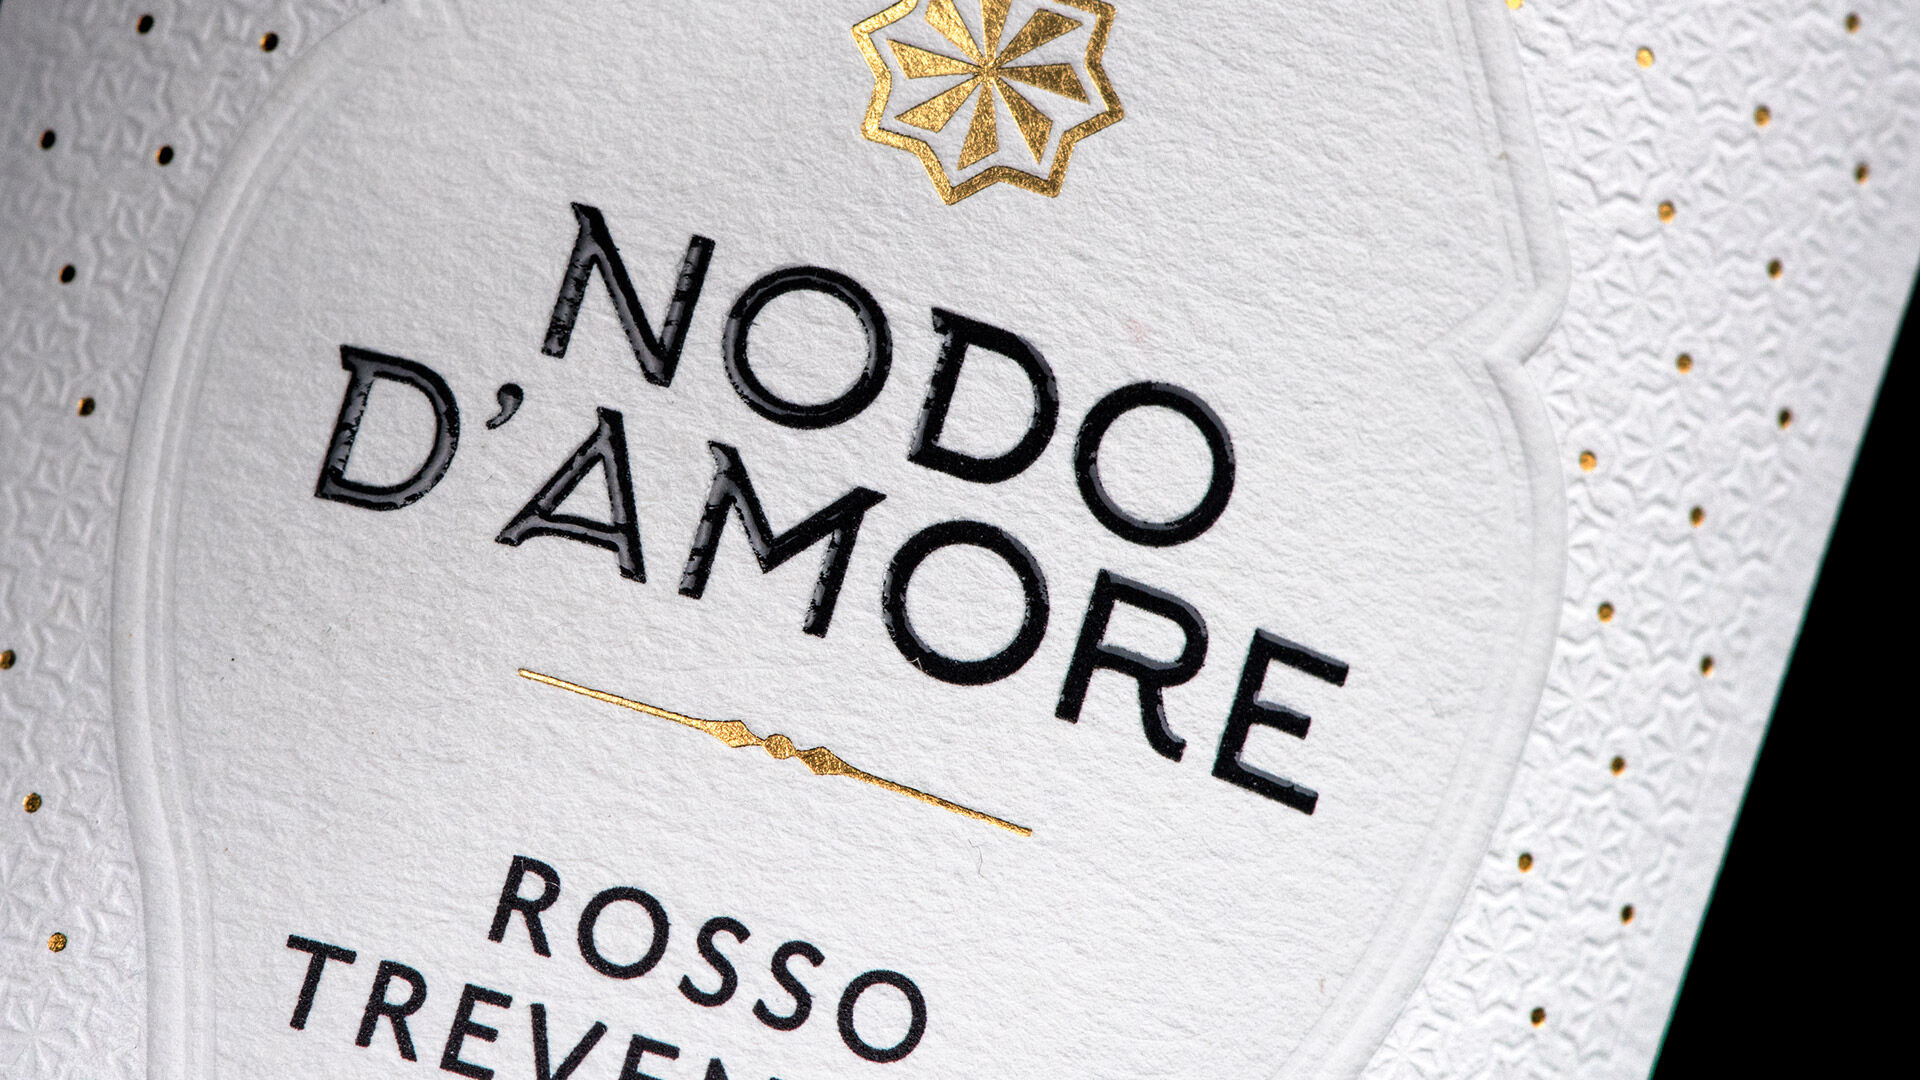 Farina  Label Design  Nodo d'Amore